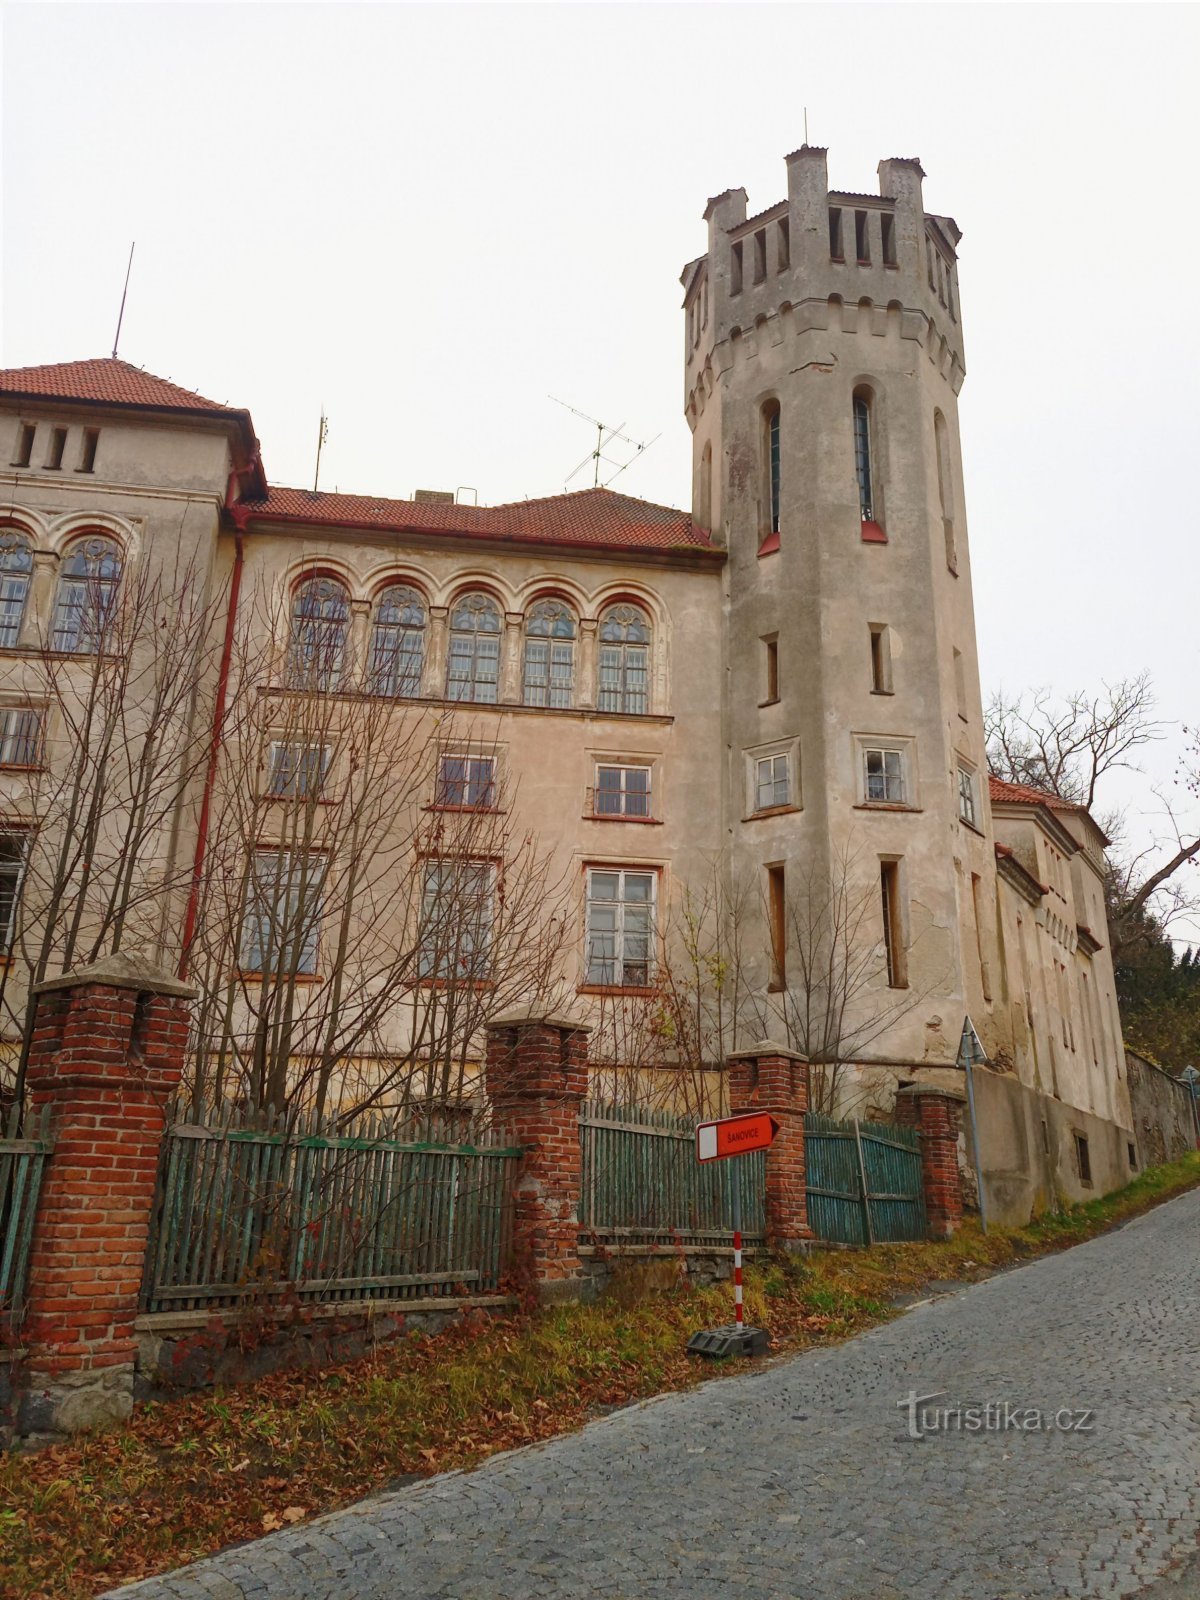 2. Castelul abandonat din Jetřichovice. Reconstrucție în stil englezesc și gotic cu opt